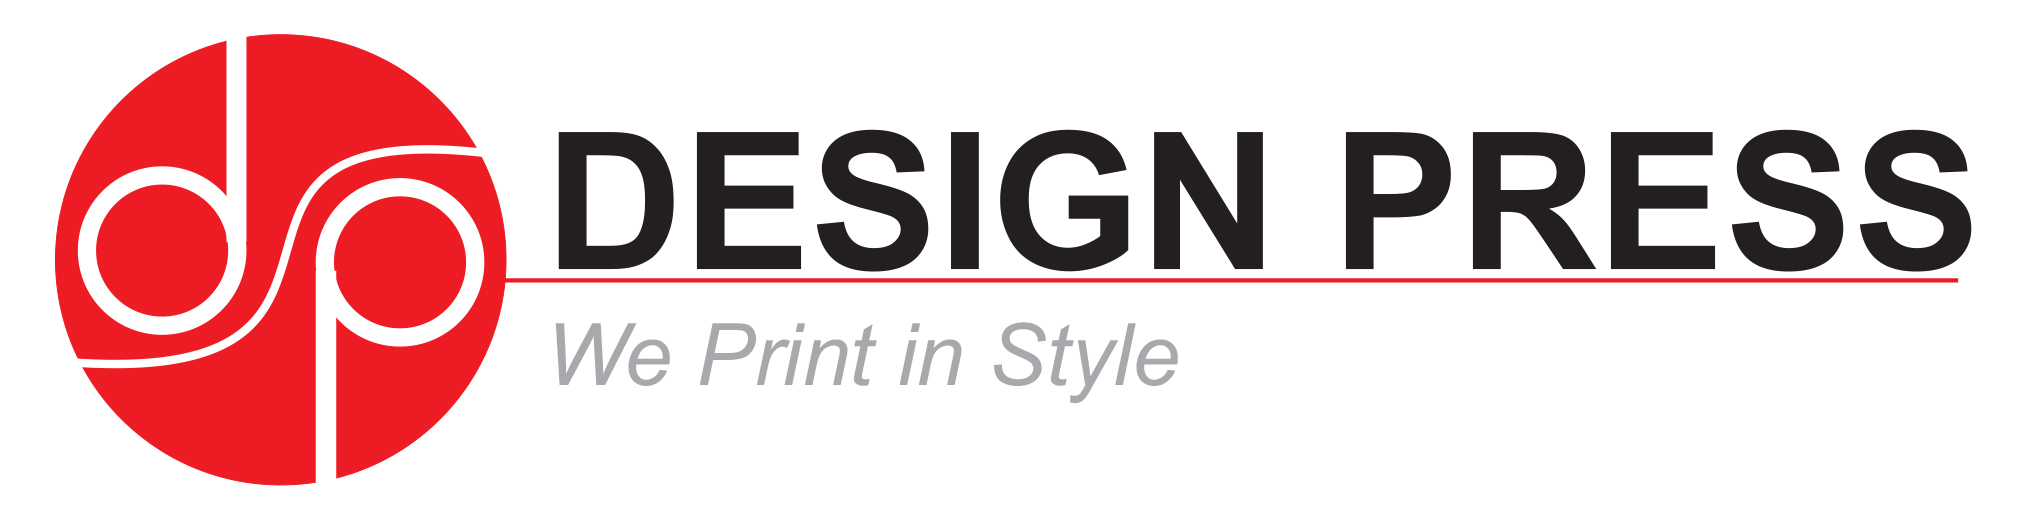 design press logo